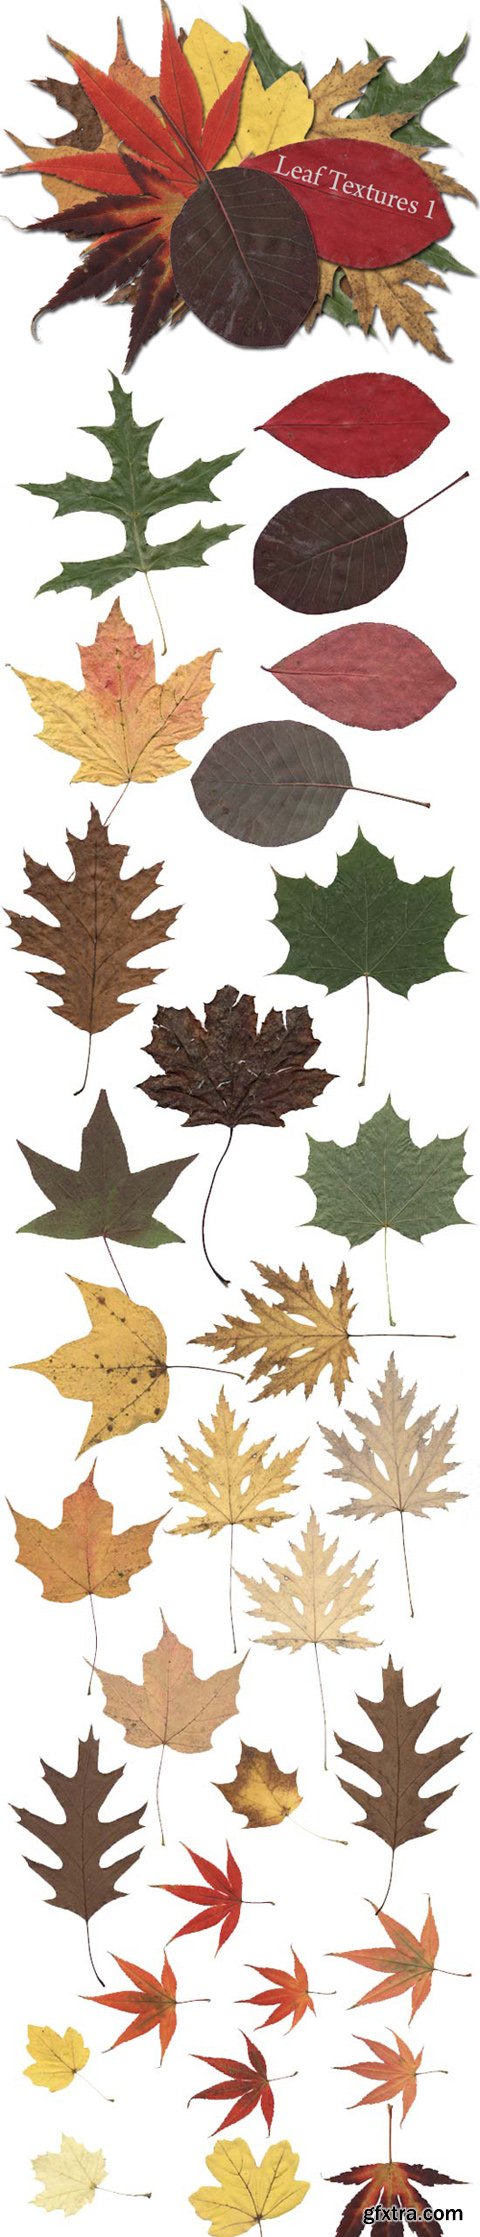 Autumn Leaf Textures, part 1